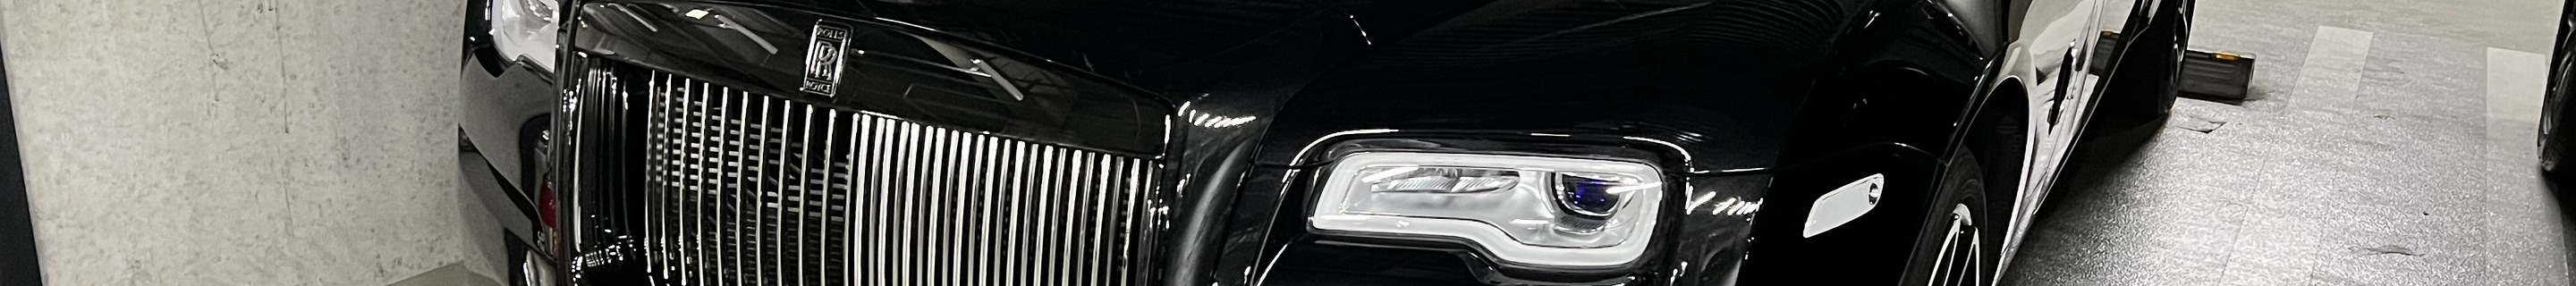 Rolls-Royce Dawn Black Badge